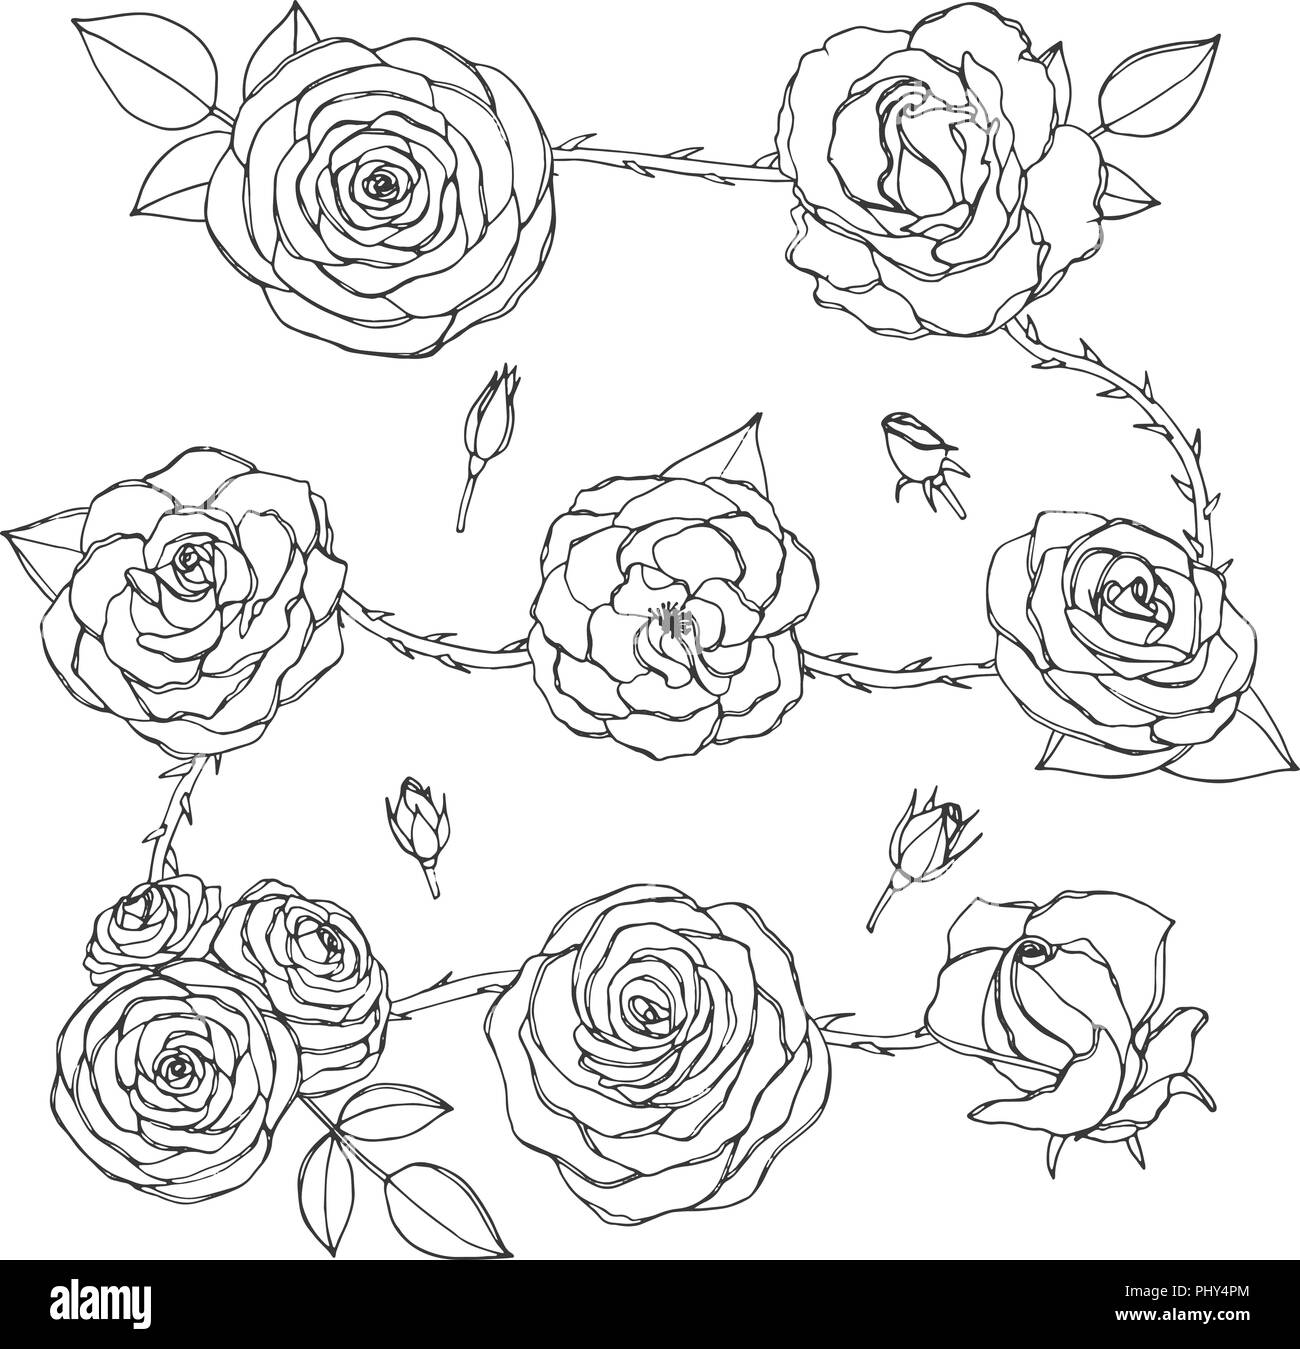 Vektor einrichten von rose Blüten und Knospen, Blätter und dornigen Stiele line Art auf weißem Hintergrund. Hand floral Sammlung von Blüten in s erstellt Stock Vektor